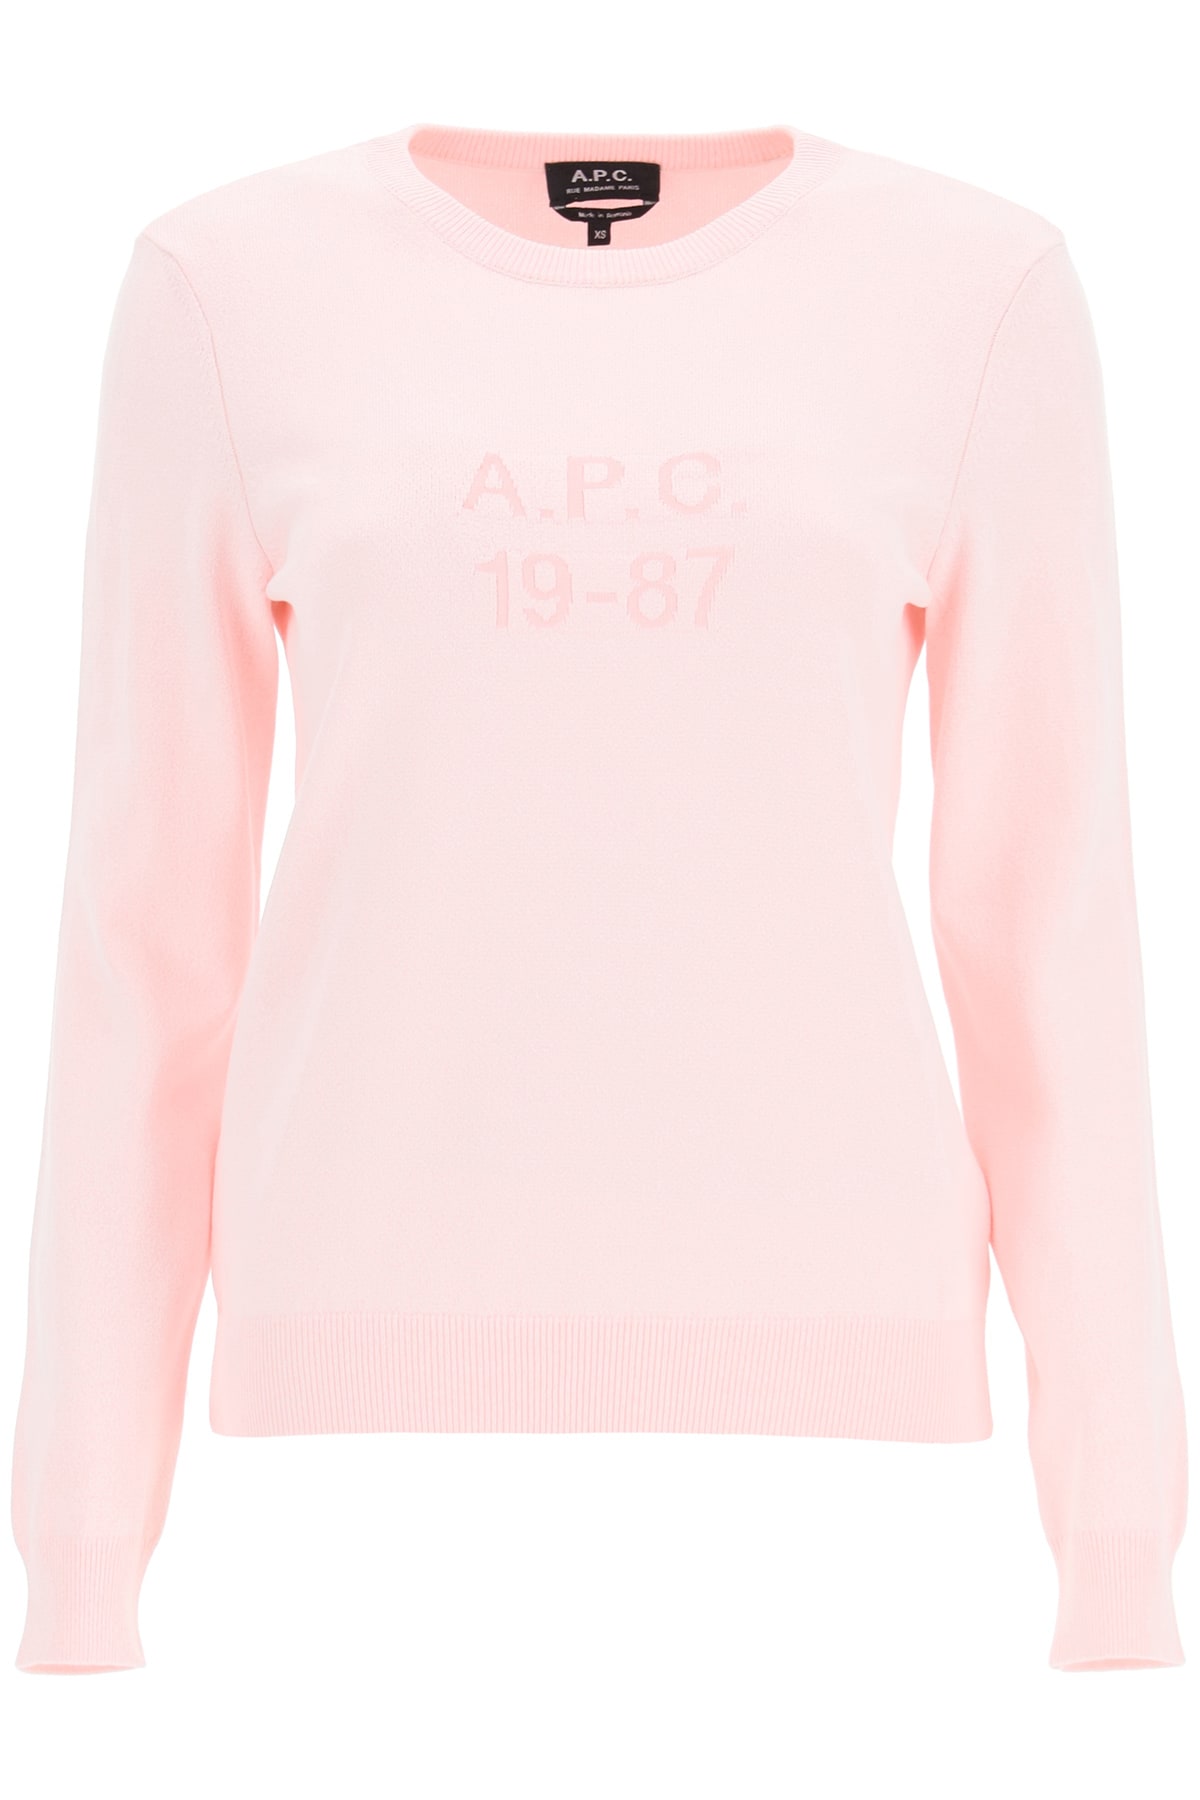 Apc Janice Sweater 19-87 In Pink